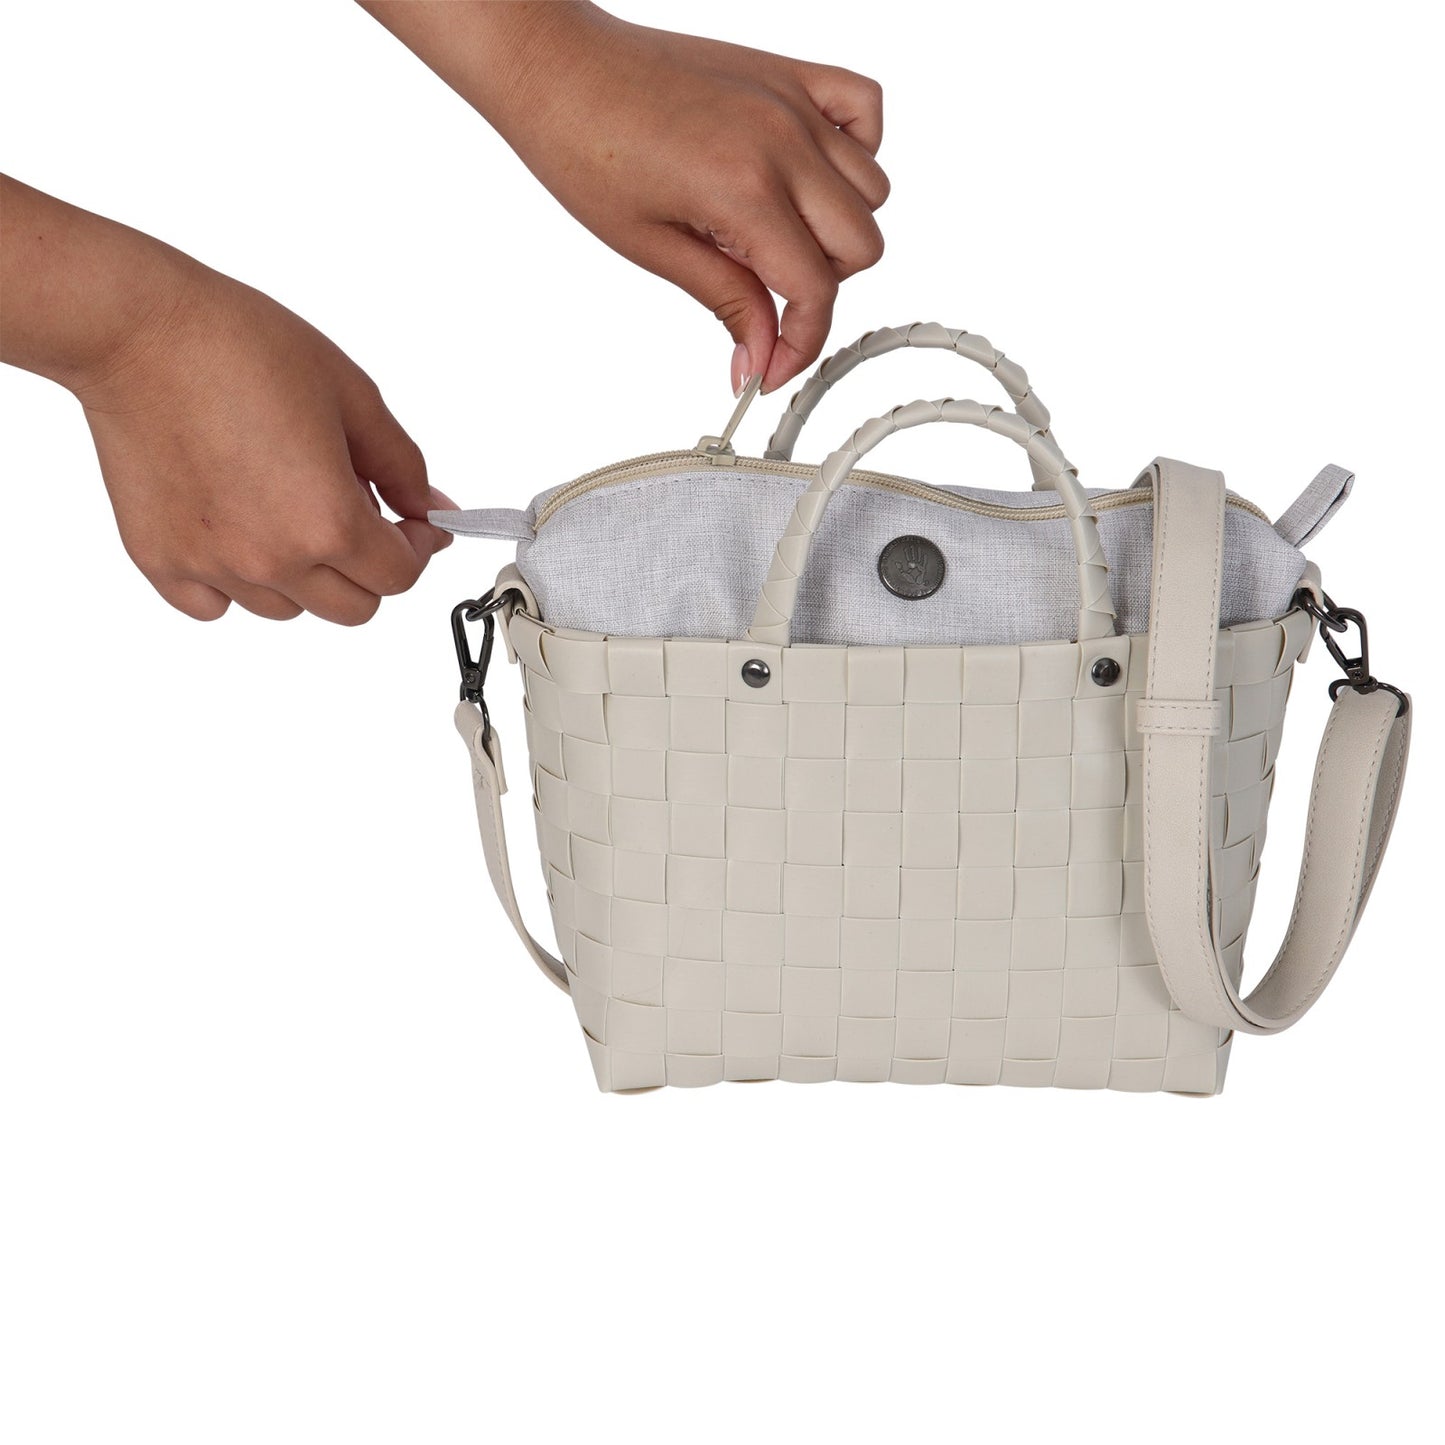 HANDED BY "Dash" handbag, crossbody bag with PU shoulder strap and zip closure size XS / "Dash" Handtasche, Crossbodytasche mit Kunstleder-Schulterriehmen und Reißverschluss Gr. XS